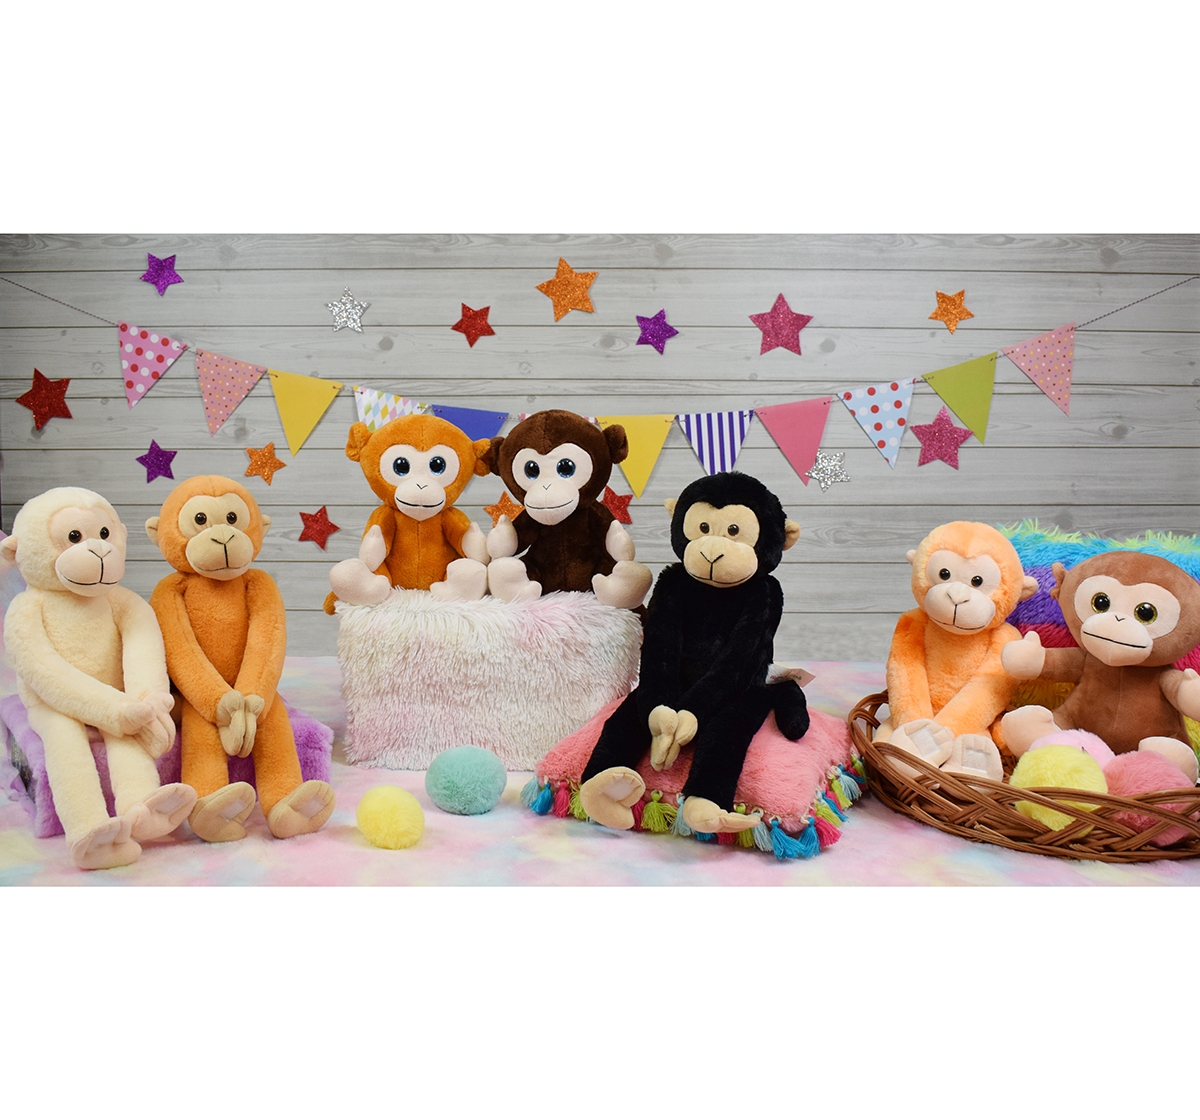 Mirada | Mirada 52cm hanging monkey soft toy Multicolor 3Y+ 5